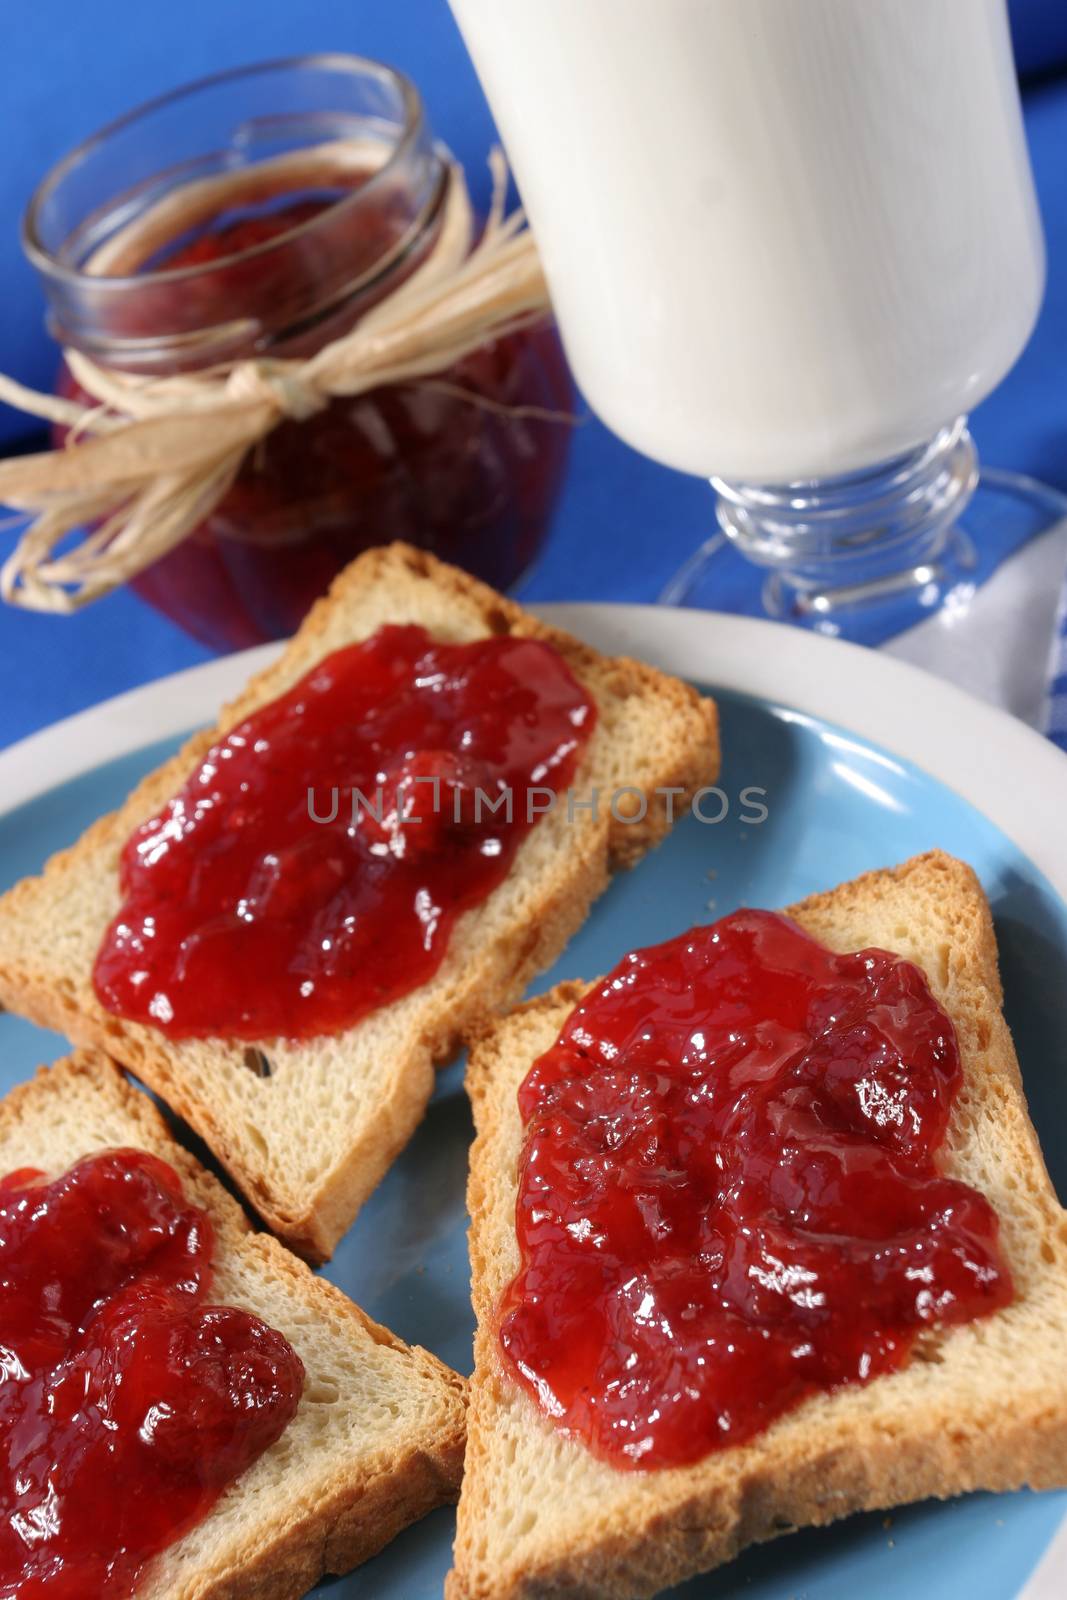 Toast with jam fruit by robert_przybysz